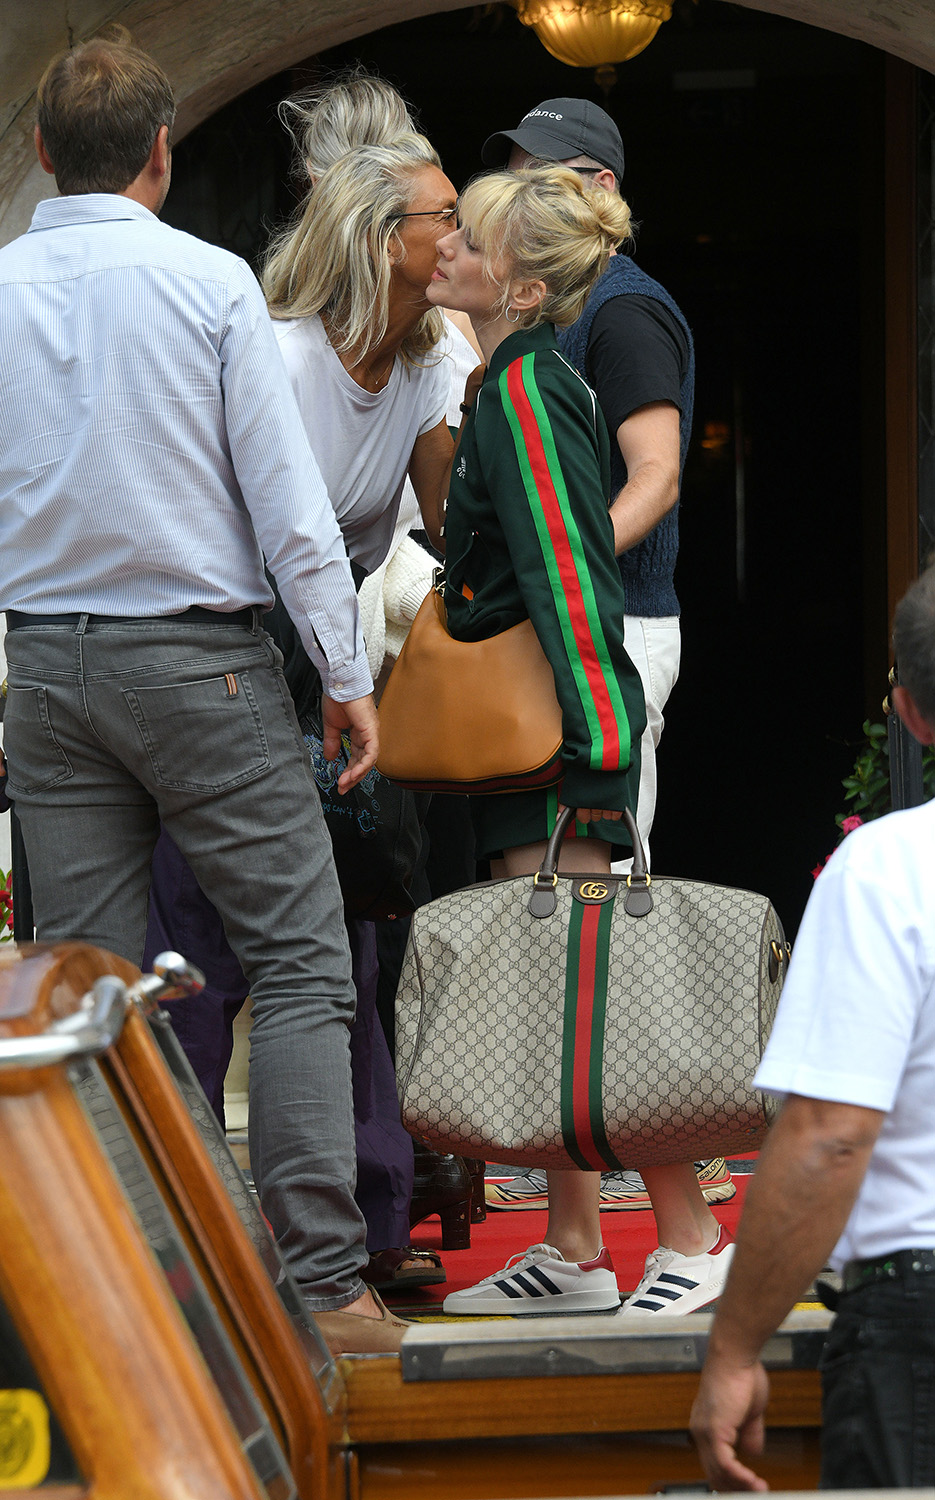 Gucci Attache mini bag